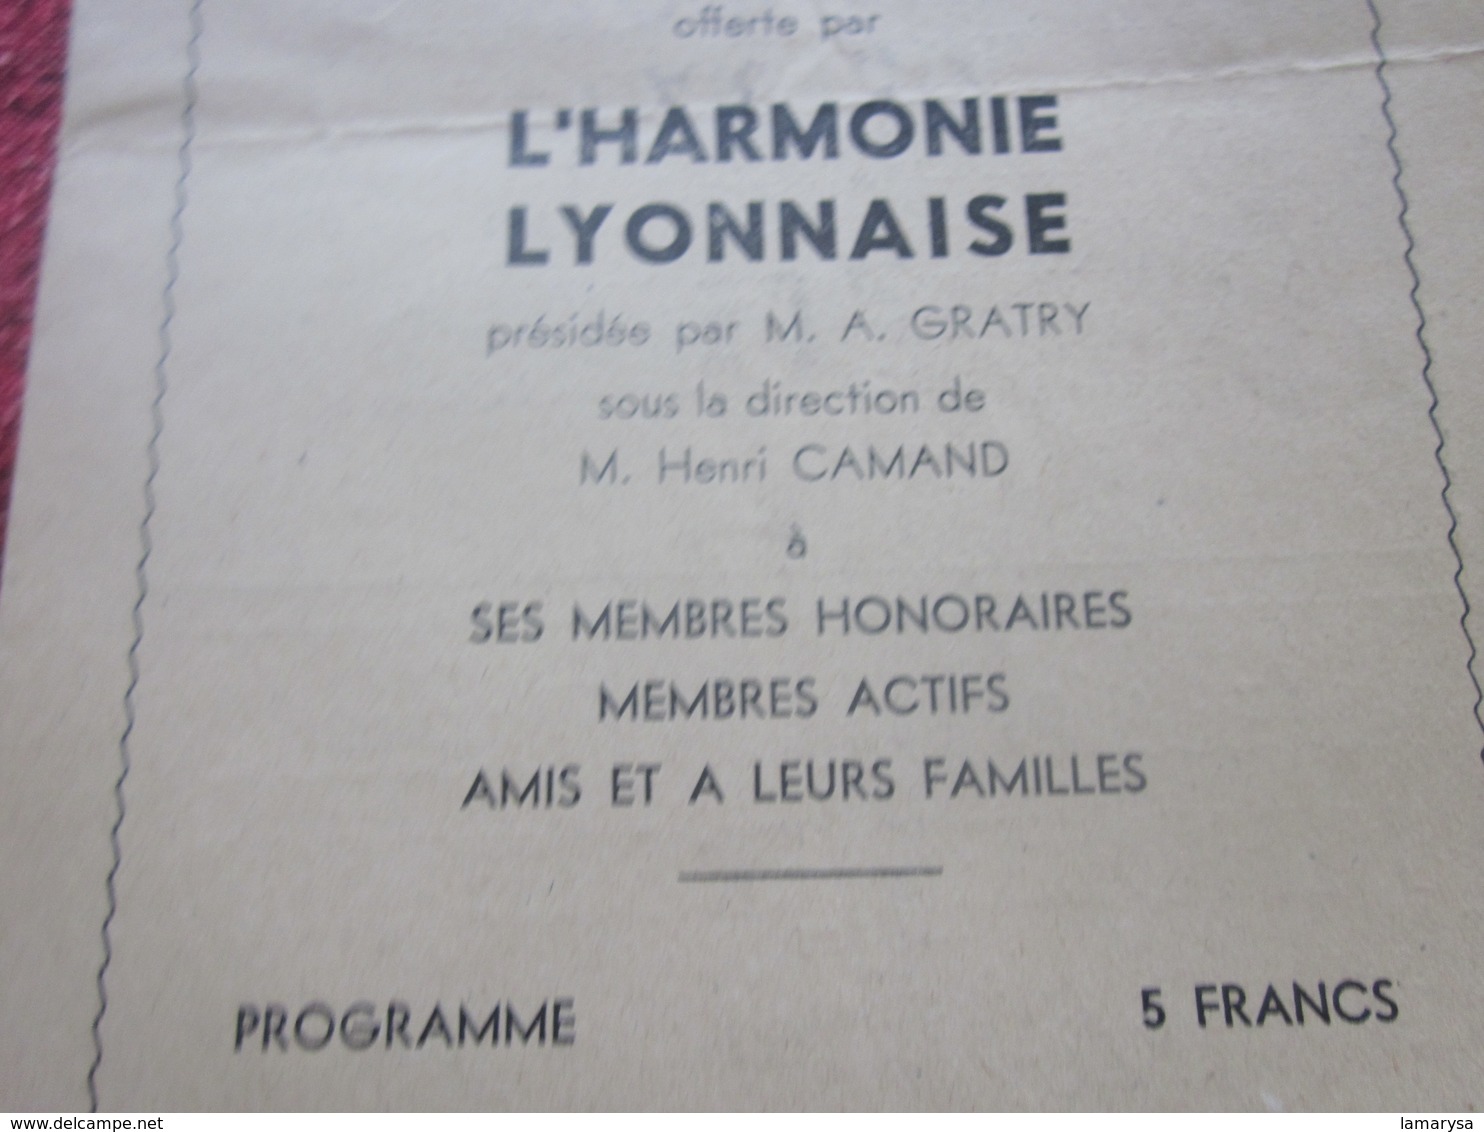 WW2-10 MAI 1944-LE BARBIER DE SÉVILLE-OPÉRA COMIQUE LYON-HARMONIE LYONNAISE-SPECTACLE PENDANT LA GUERRE-PUBLICITÉ - Programmes